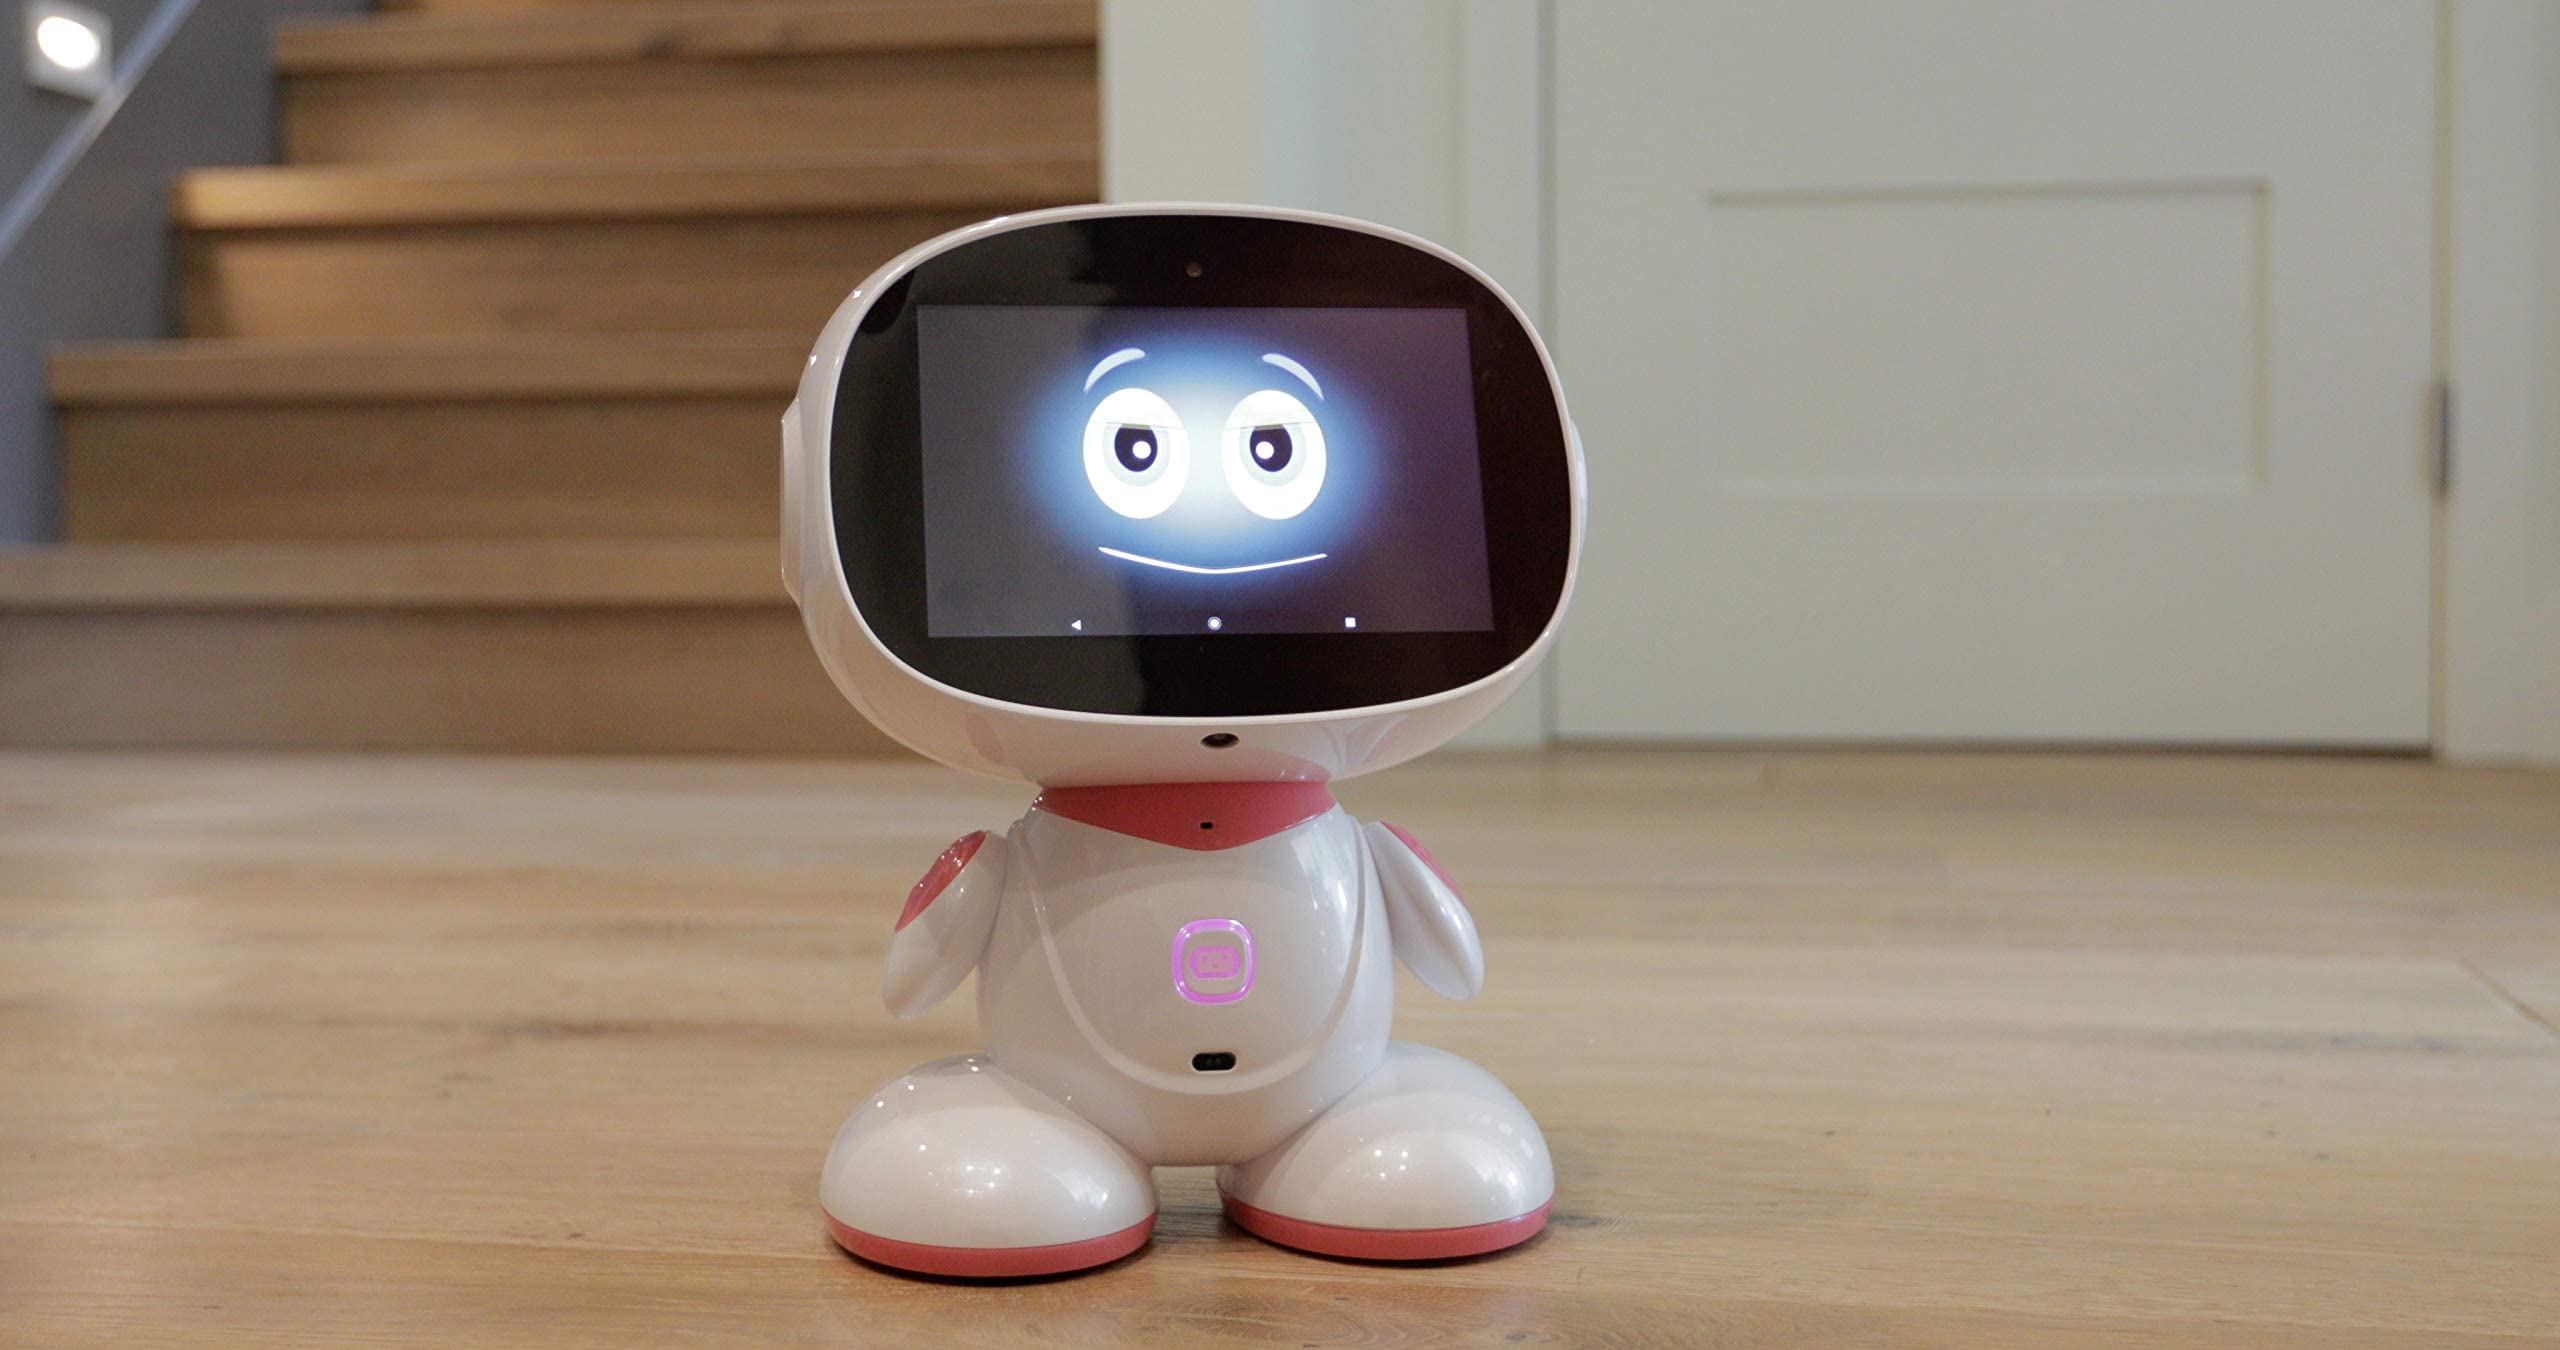 ربات خانوادگی قابل برنامه ریزی دارای گواهینامه Misa نسل بعدی KidSafe، اسباب بازی ربات آموزشی راه رفتن خانه هوشمند چند منظوره، همراه یادگیری هوشمند STEM، دستیار شخصی چند زبانه، هدیه (صورتی)